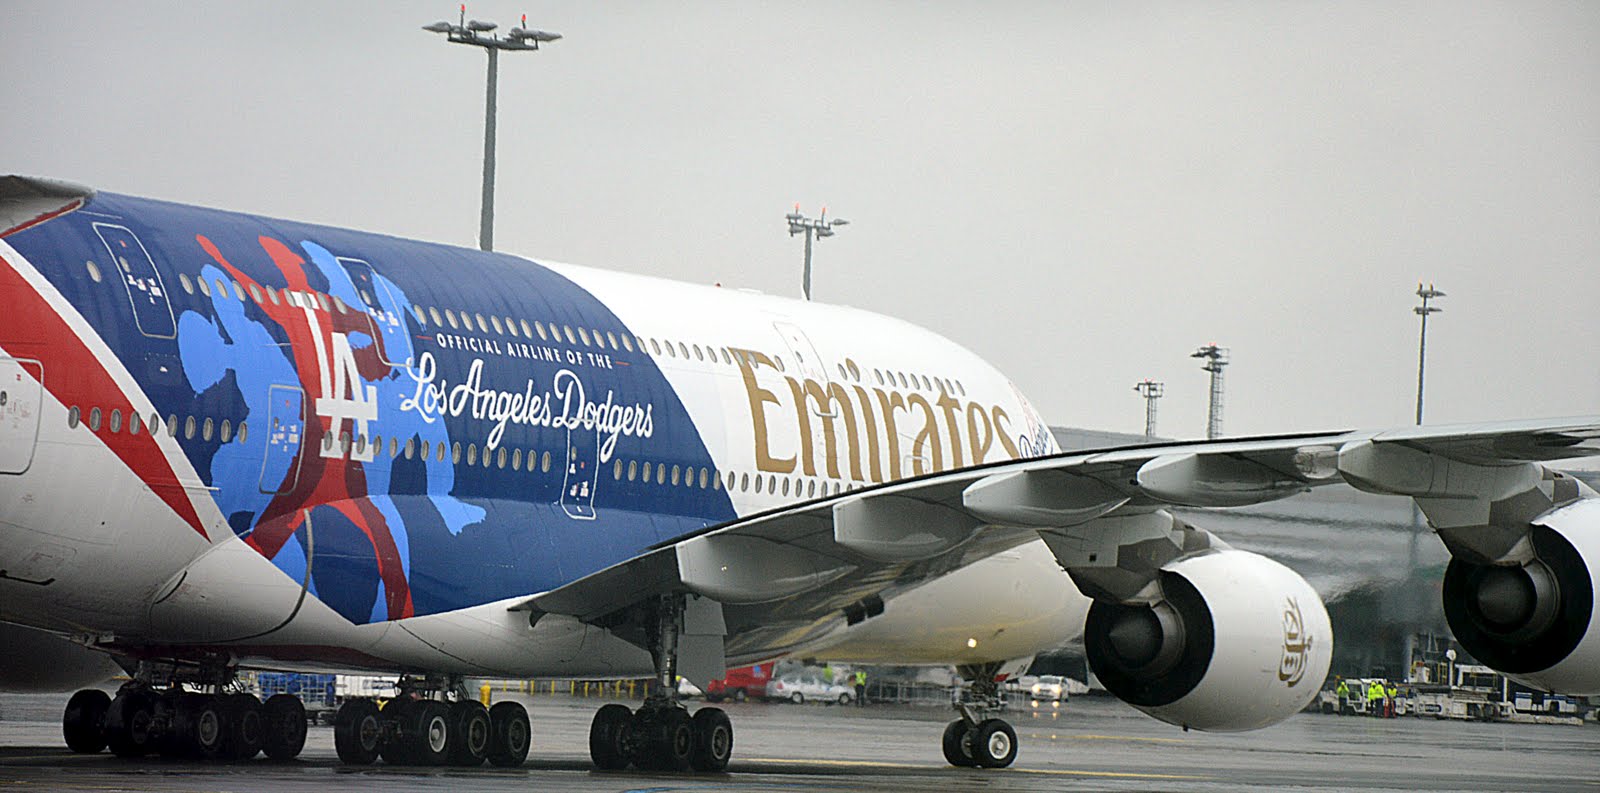 Emirates patří k největším zákazníkům Řízení letového provozu. Přes Česko míří velká část letů mezi Dubají a Evropou. Foto: Jan Sůra